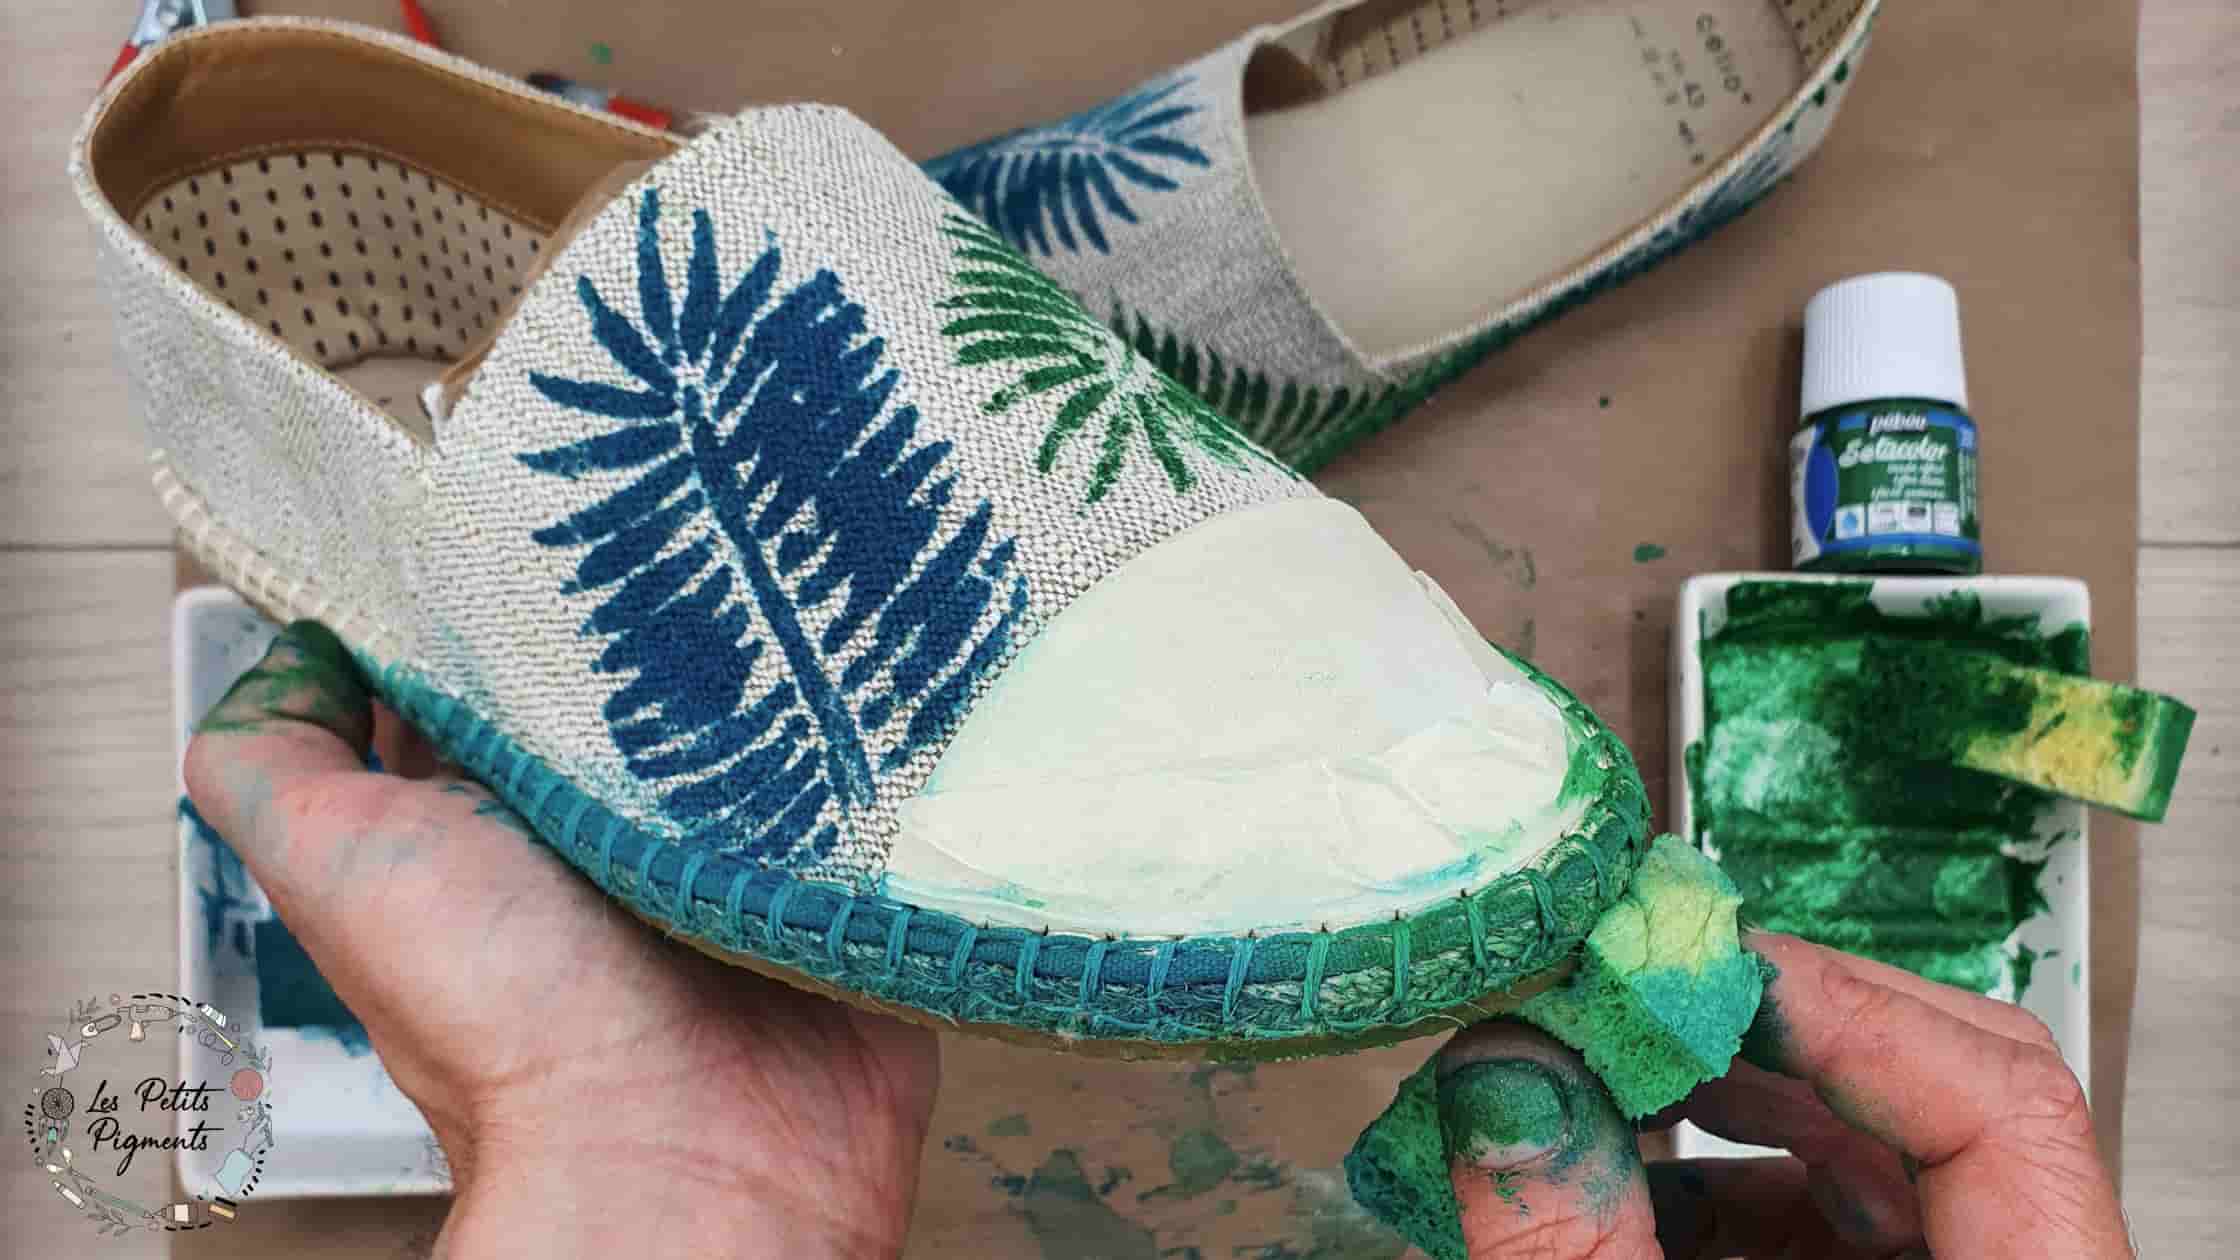 Personnaliser ses chaussures : notre DIY coloré ! 